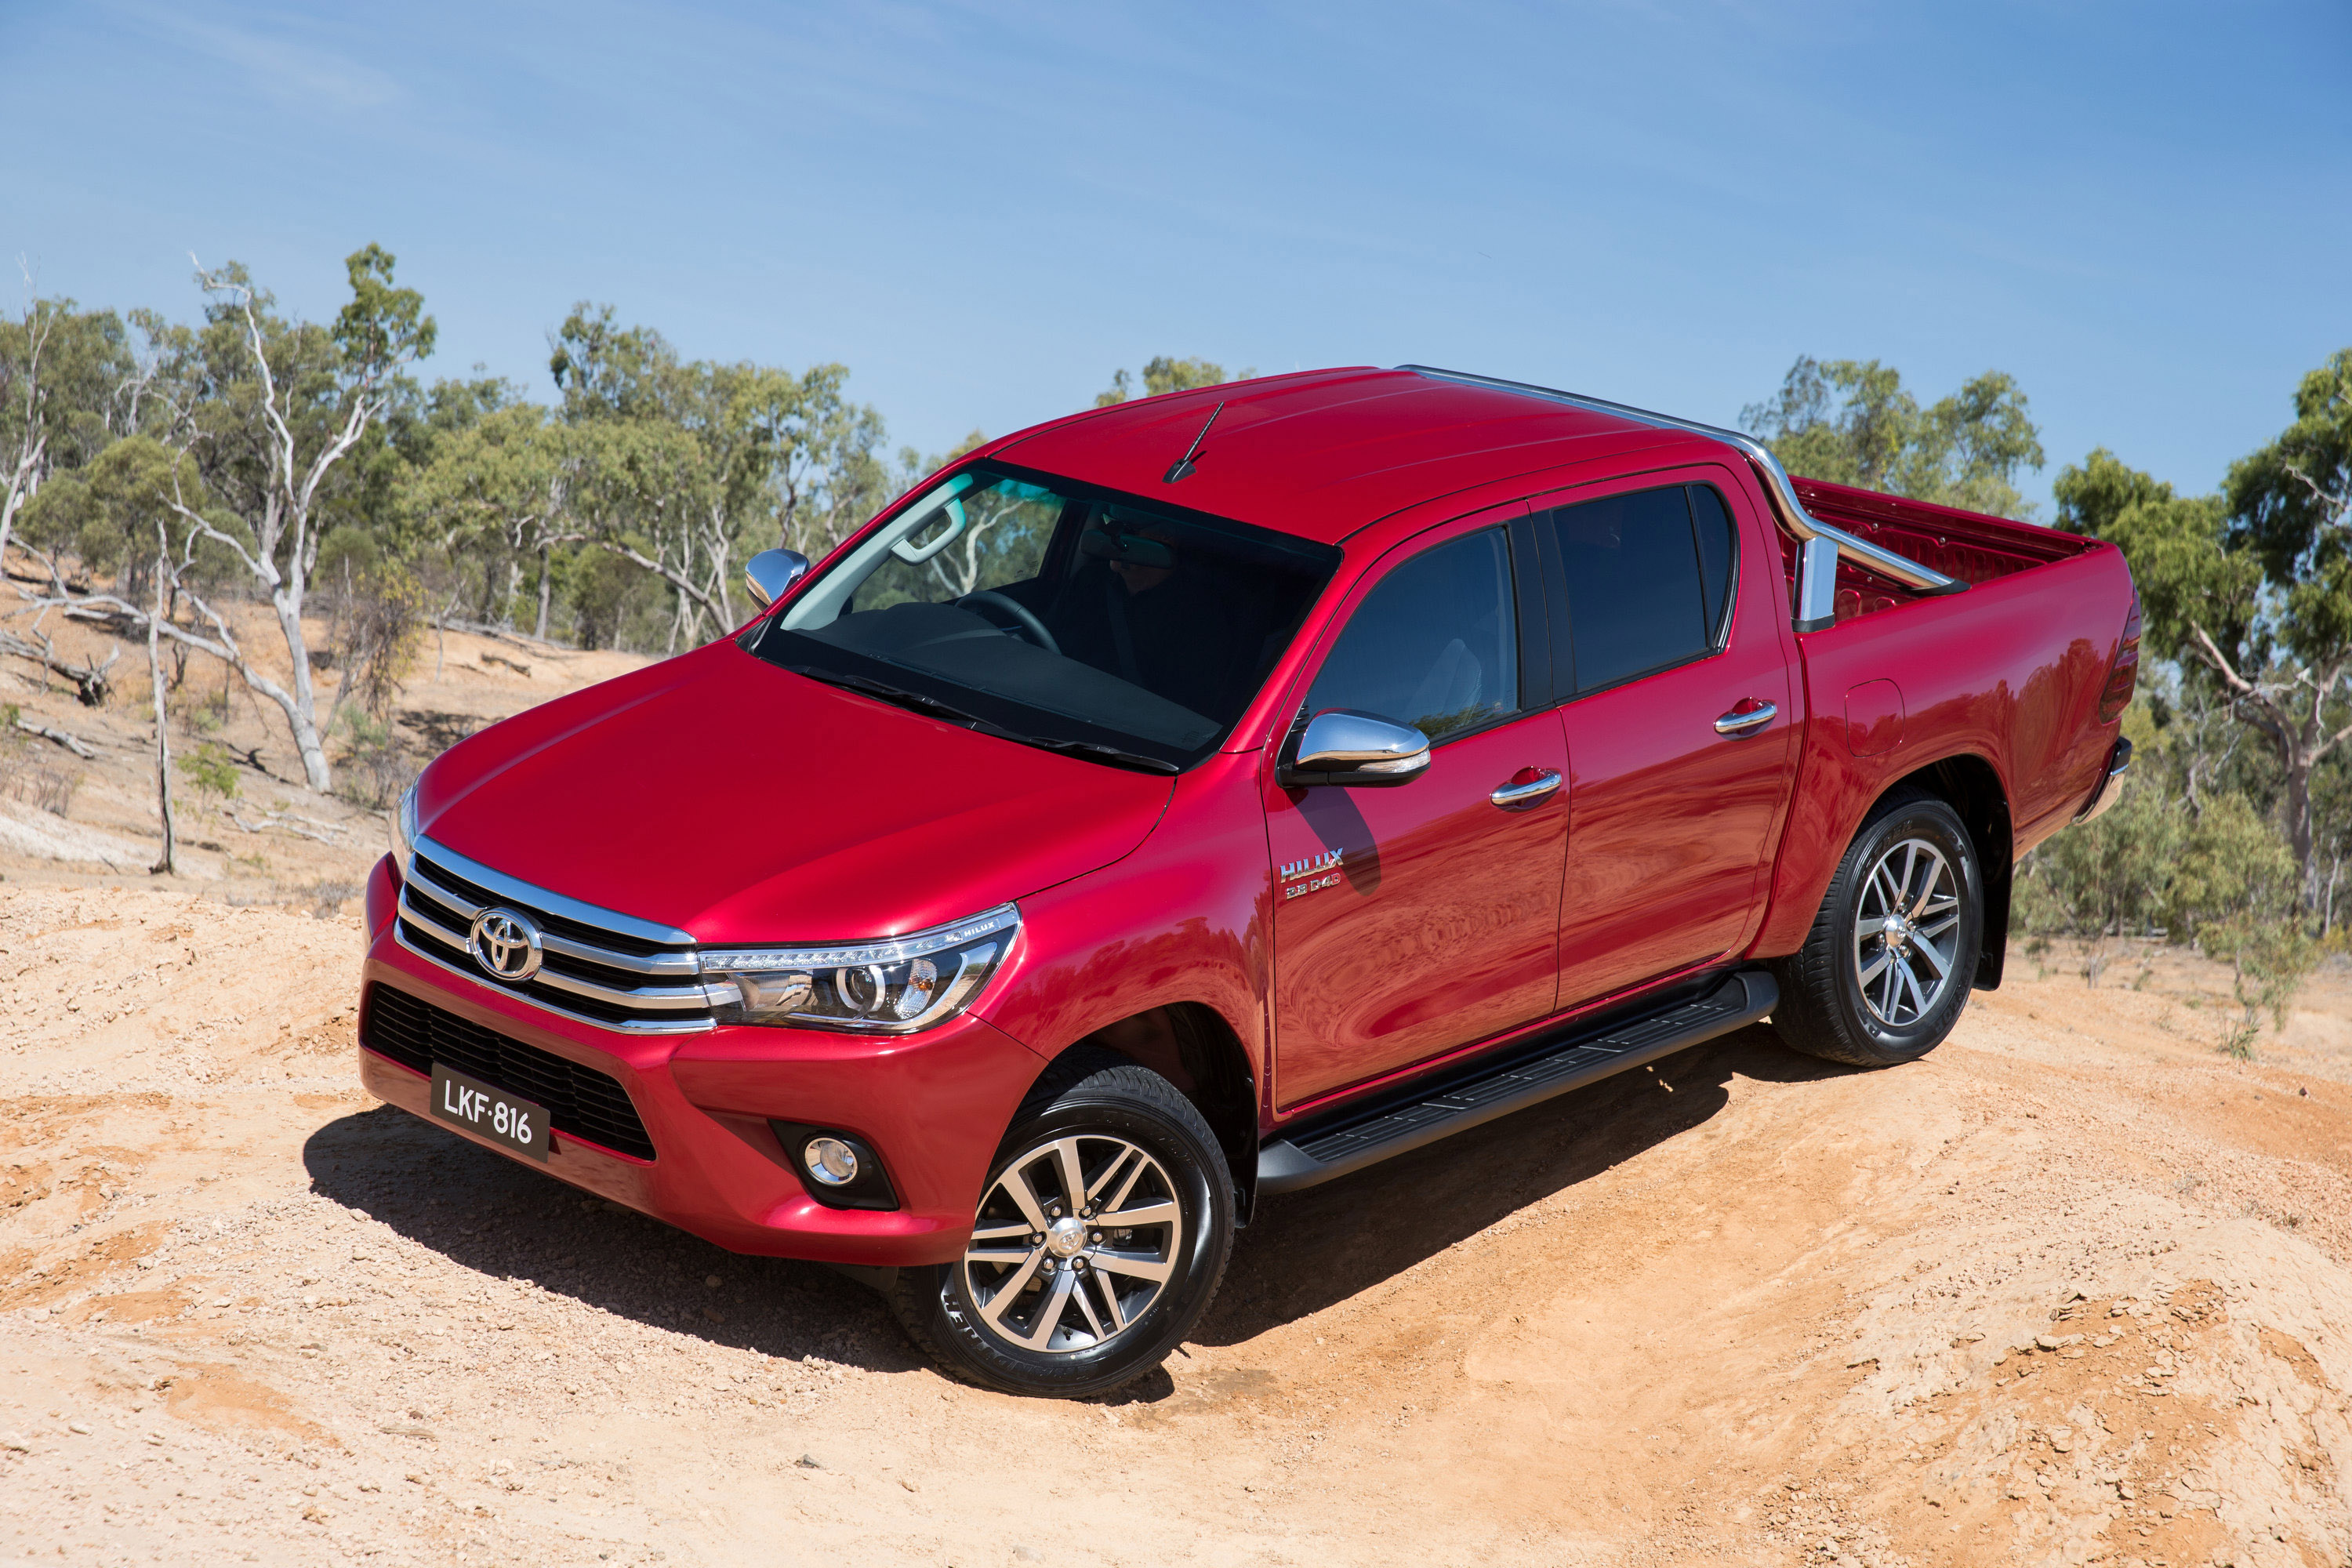 Toyota australian market share